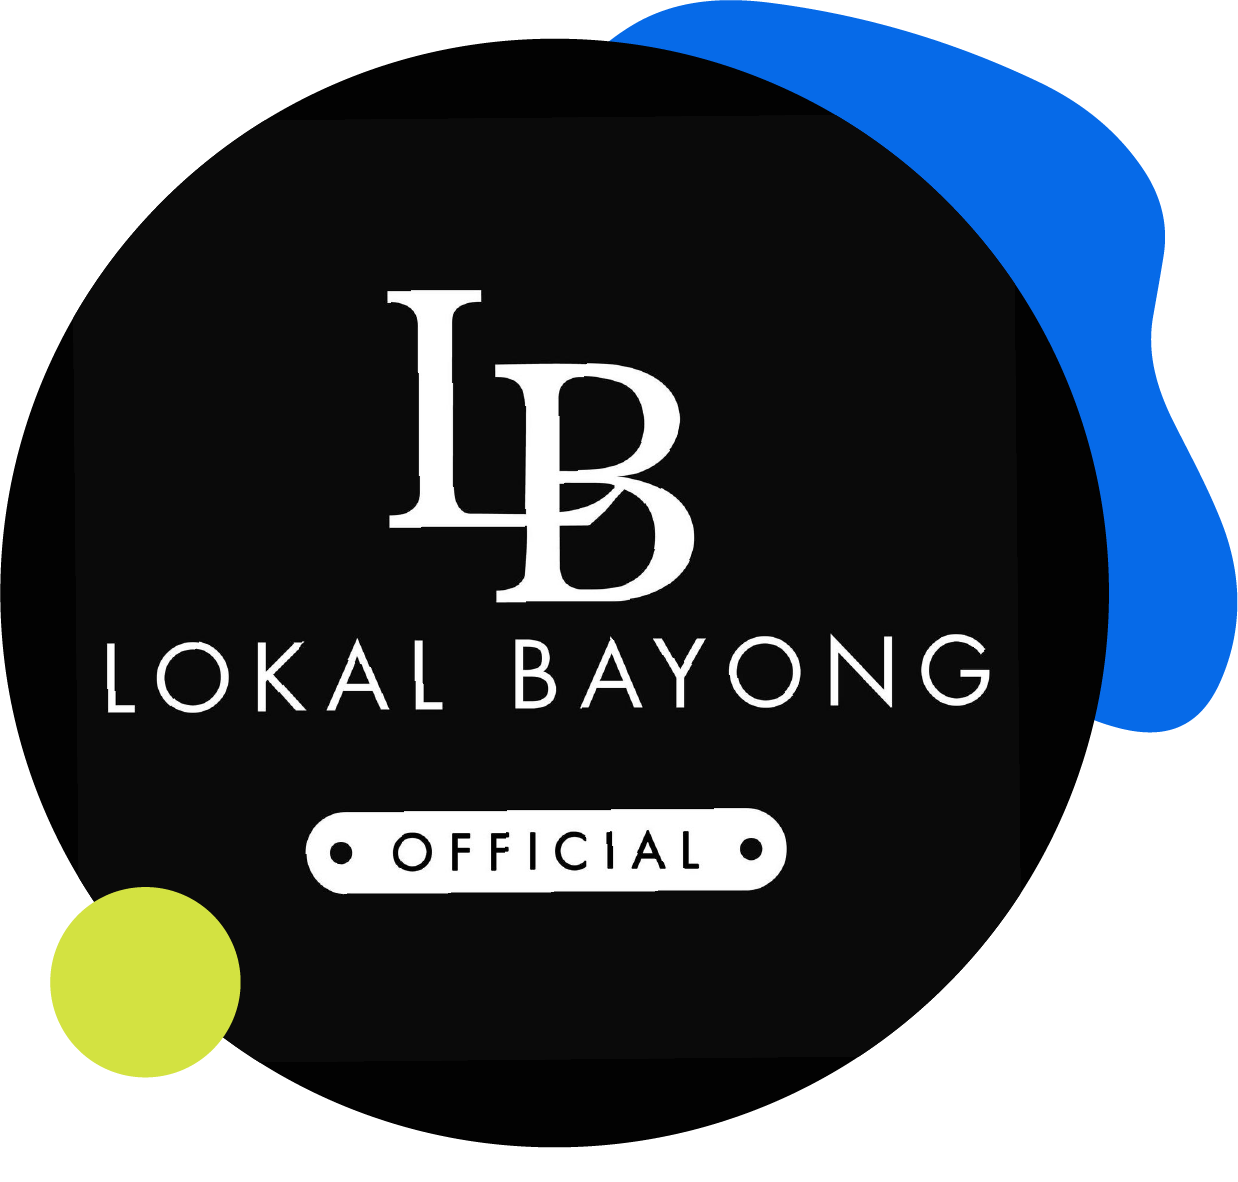 Local Bayong